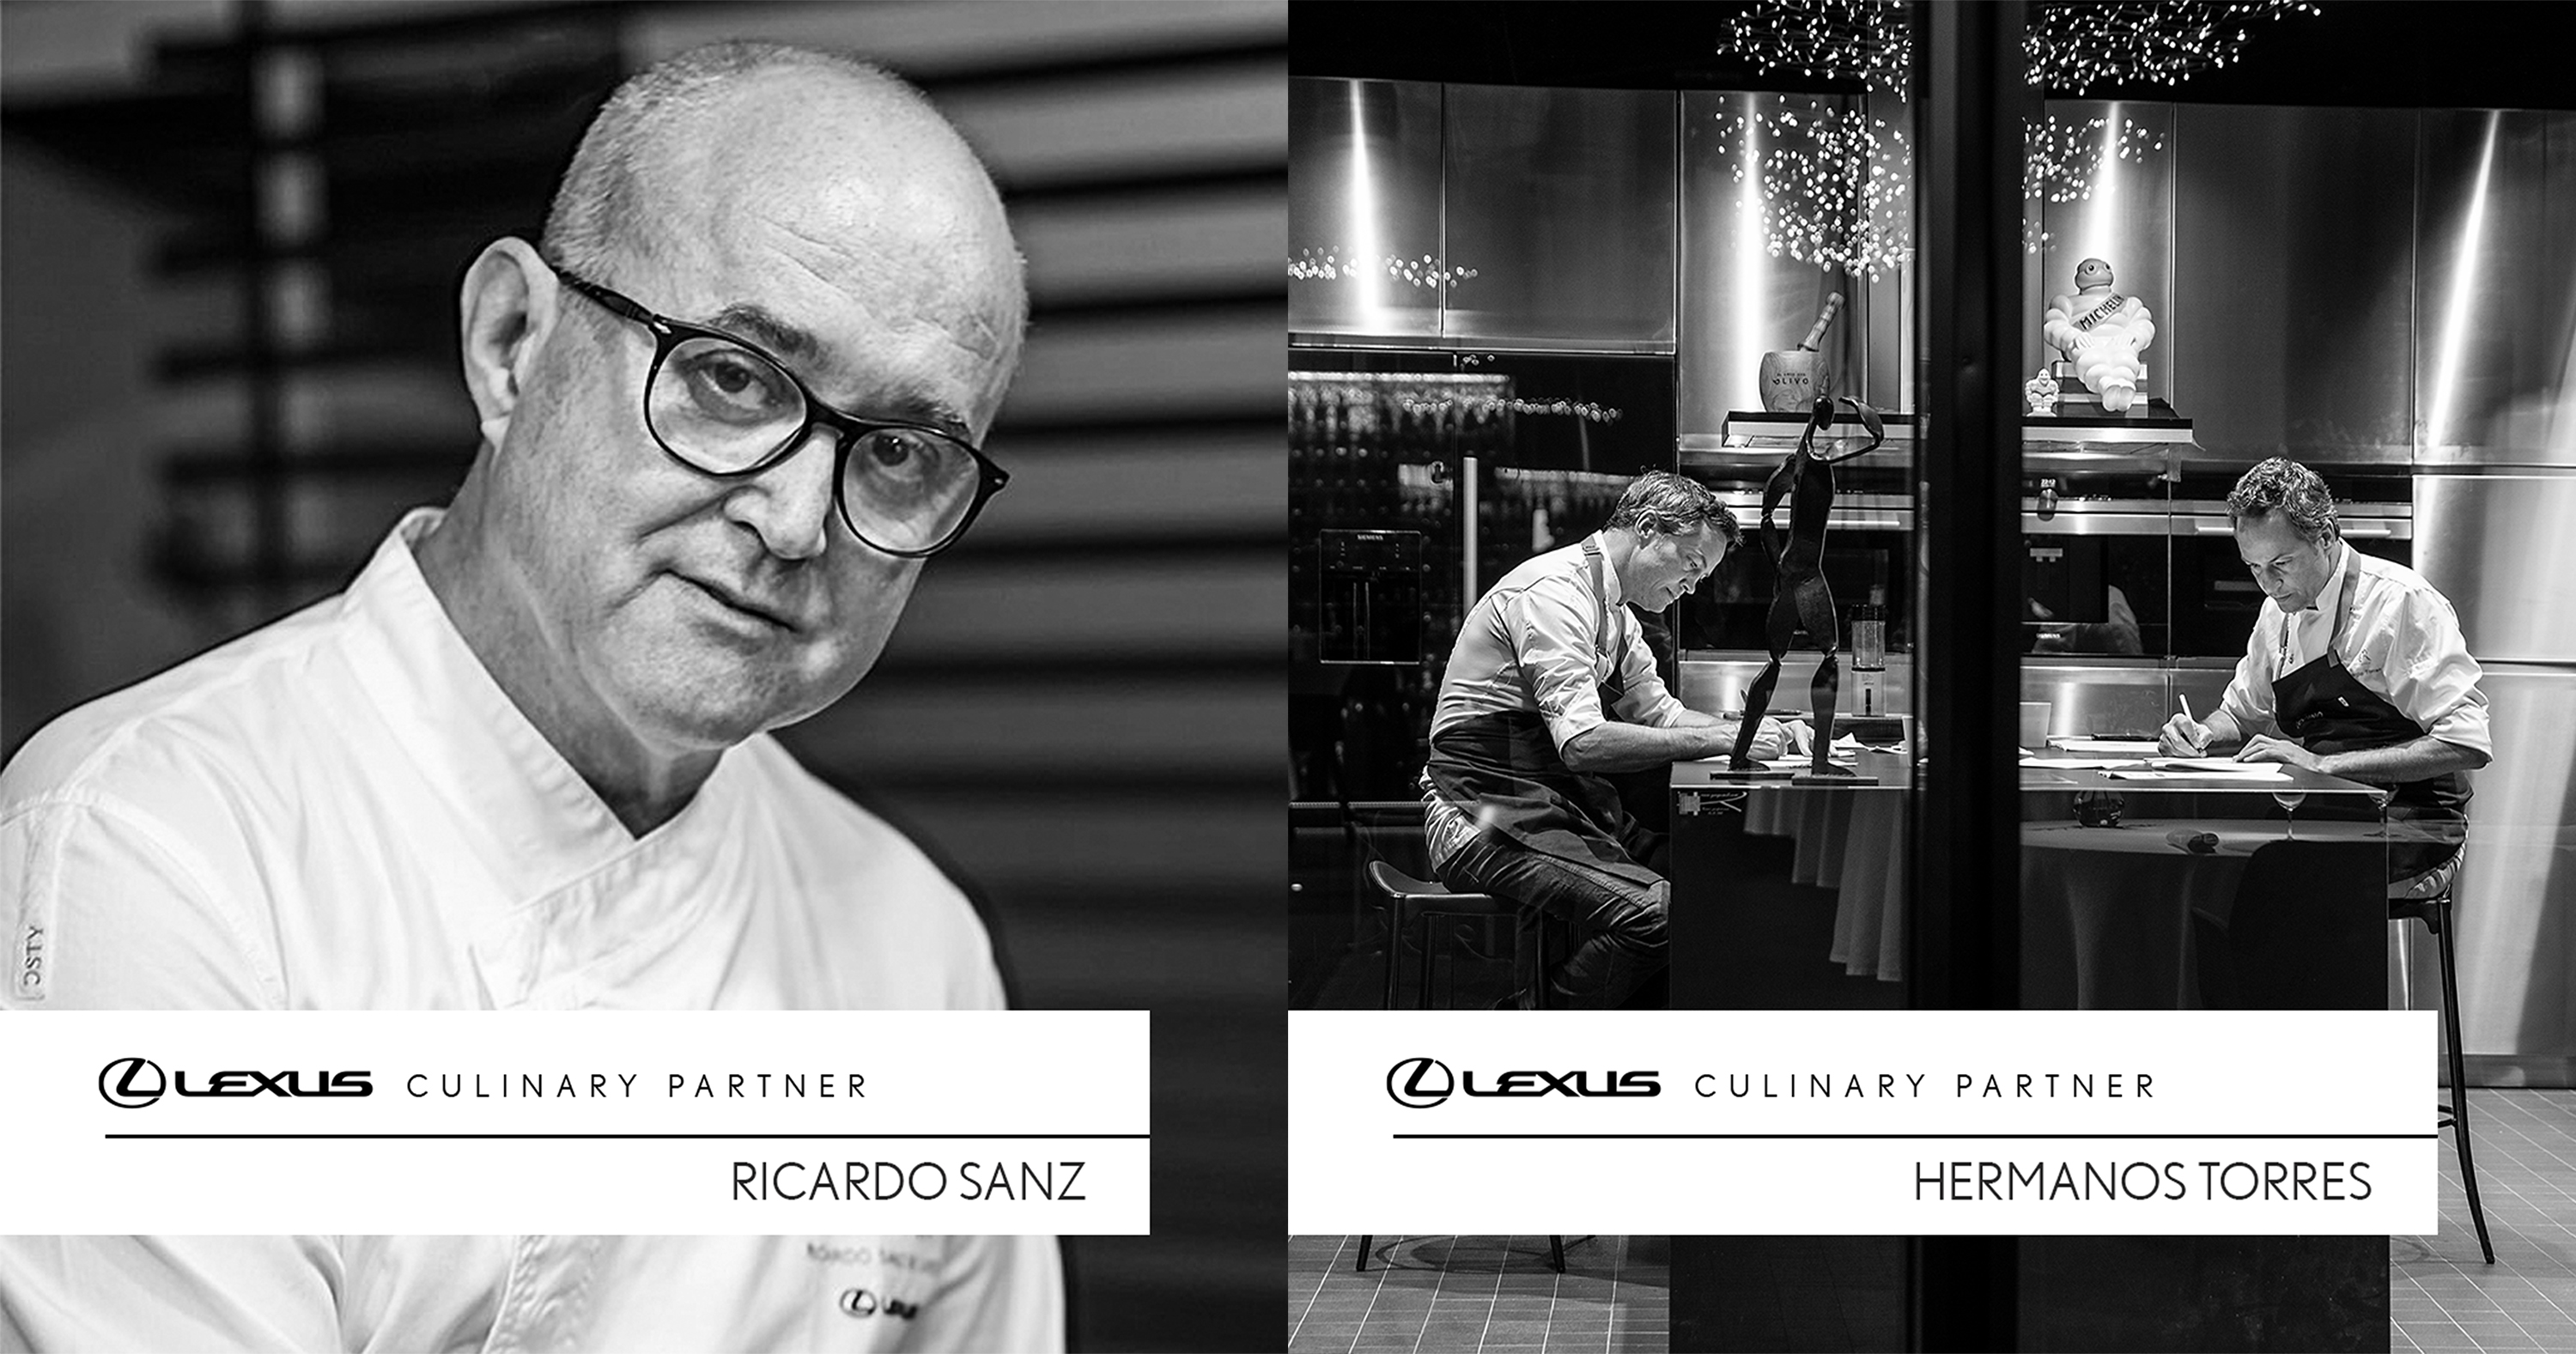 Galería: Los chefs Hermanos Torres y Ricardo Sanz, estrellas destacadas del libro global de cocina Lexus